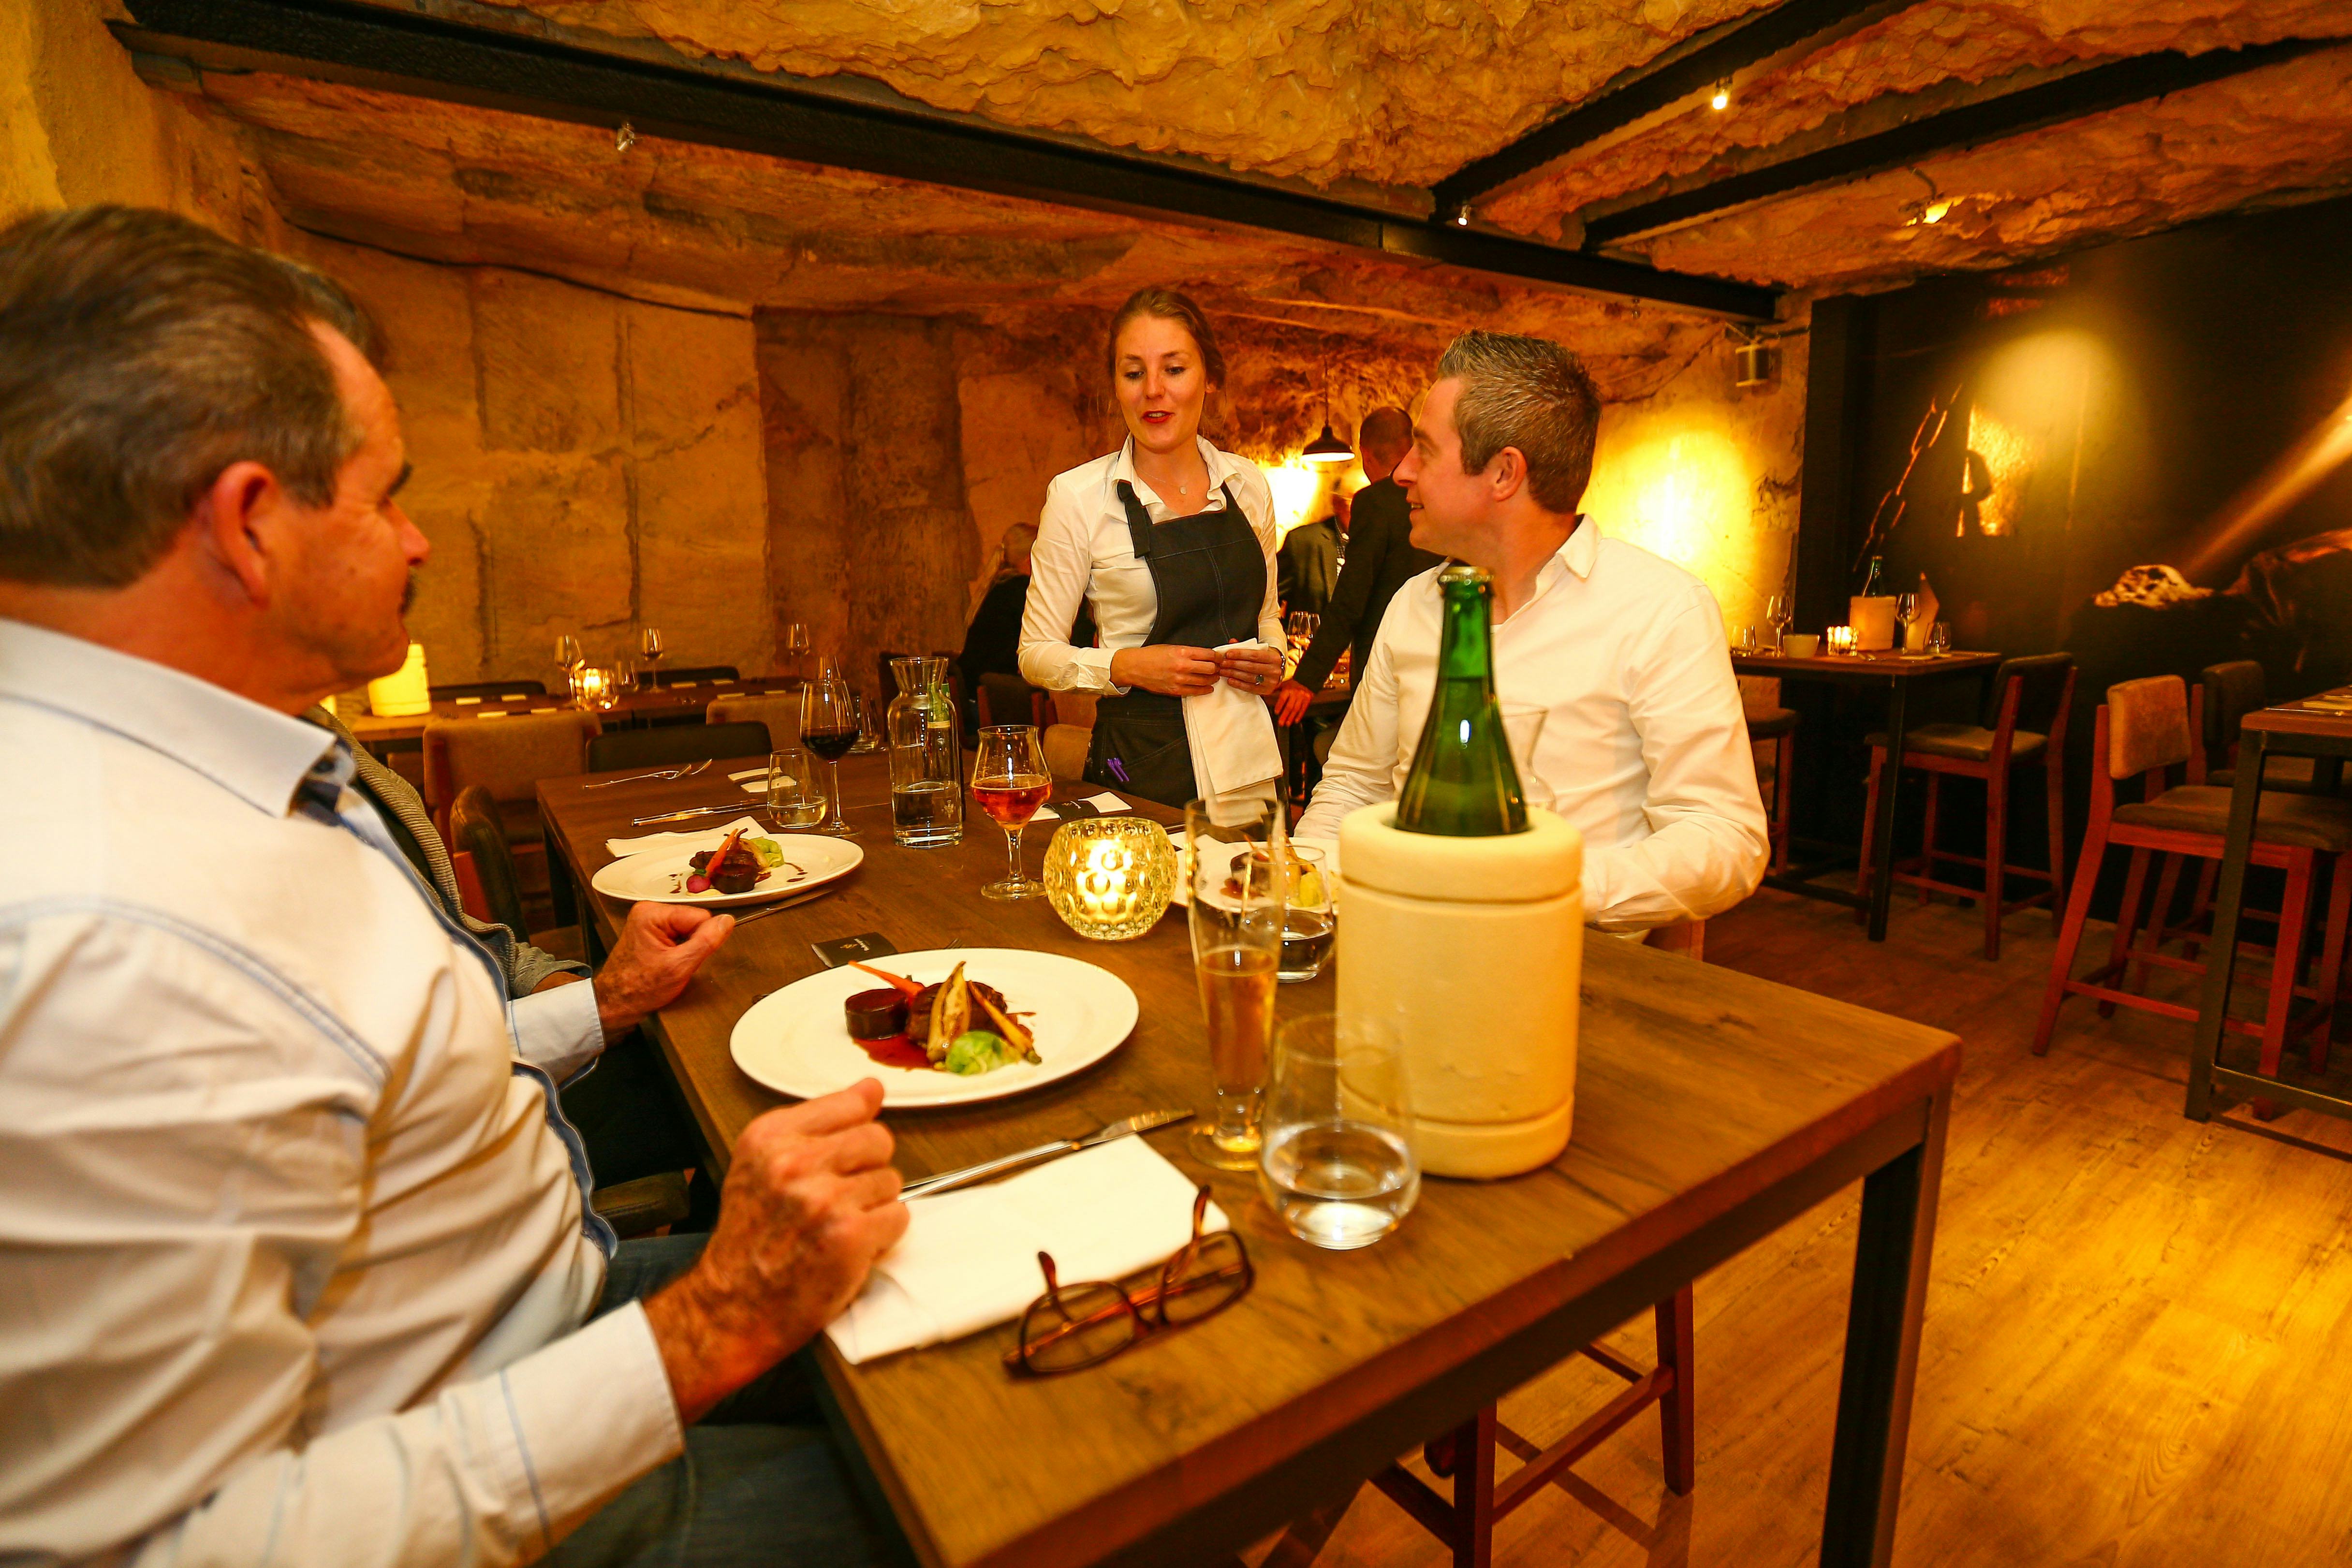 Valkenburg: Daelhemergroeve restaurant onder de grond